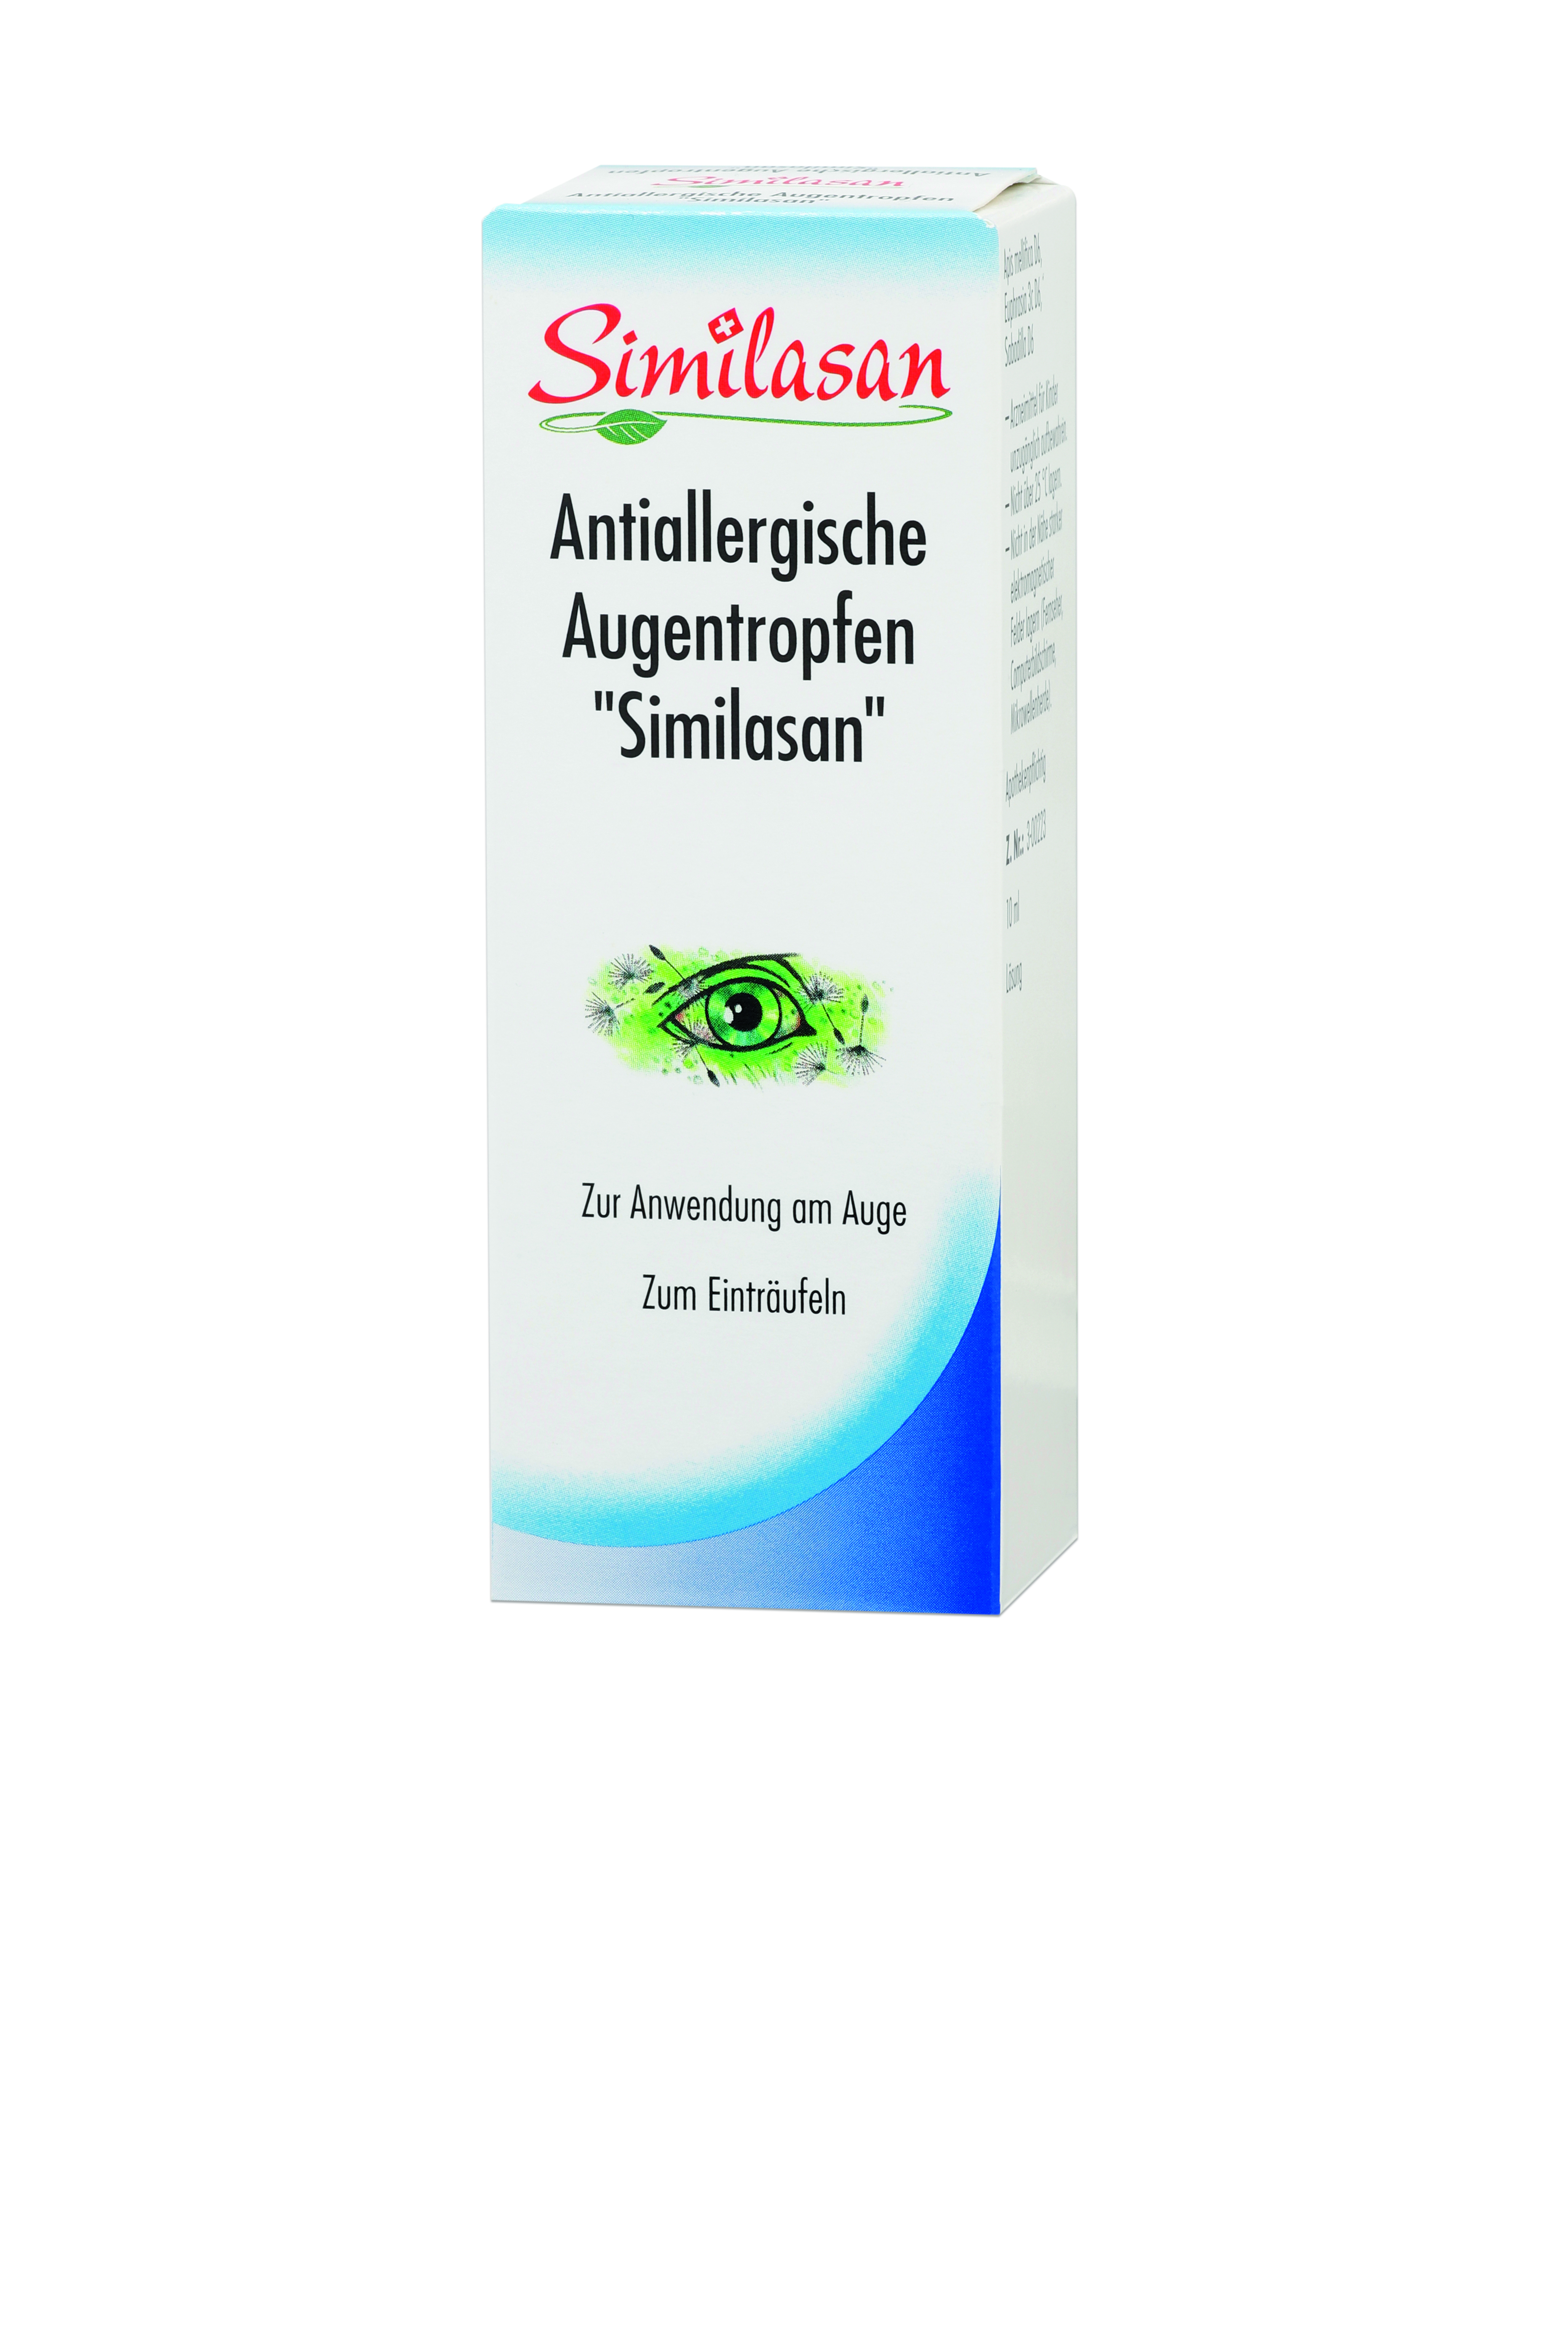 Antiallergische Augentropfen "Similasan"